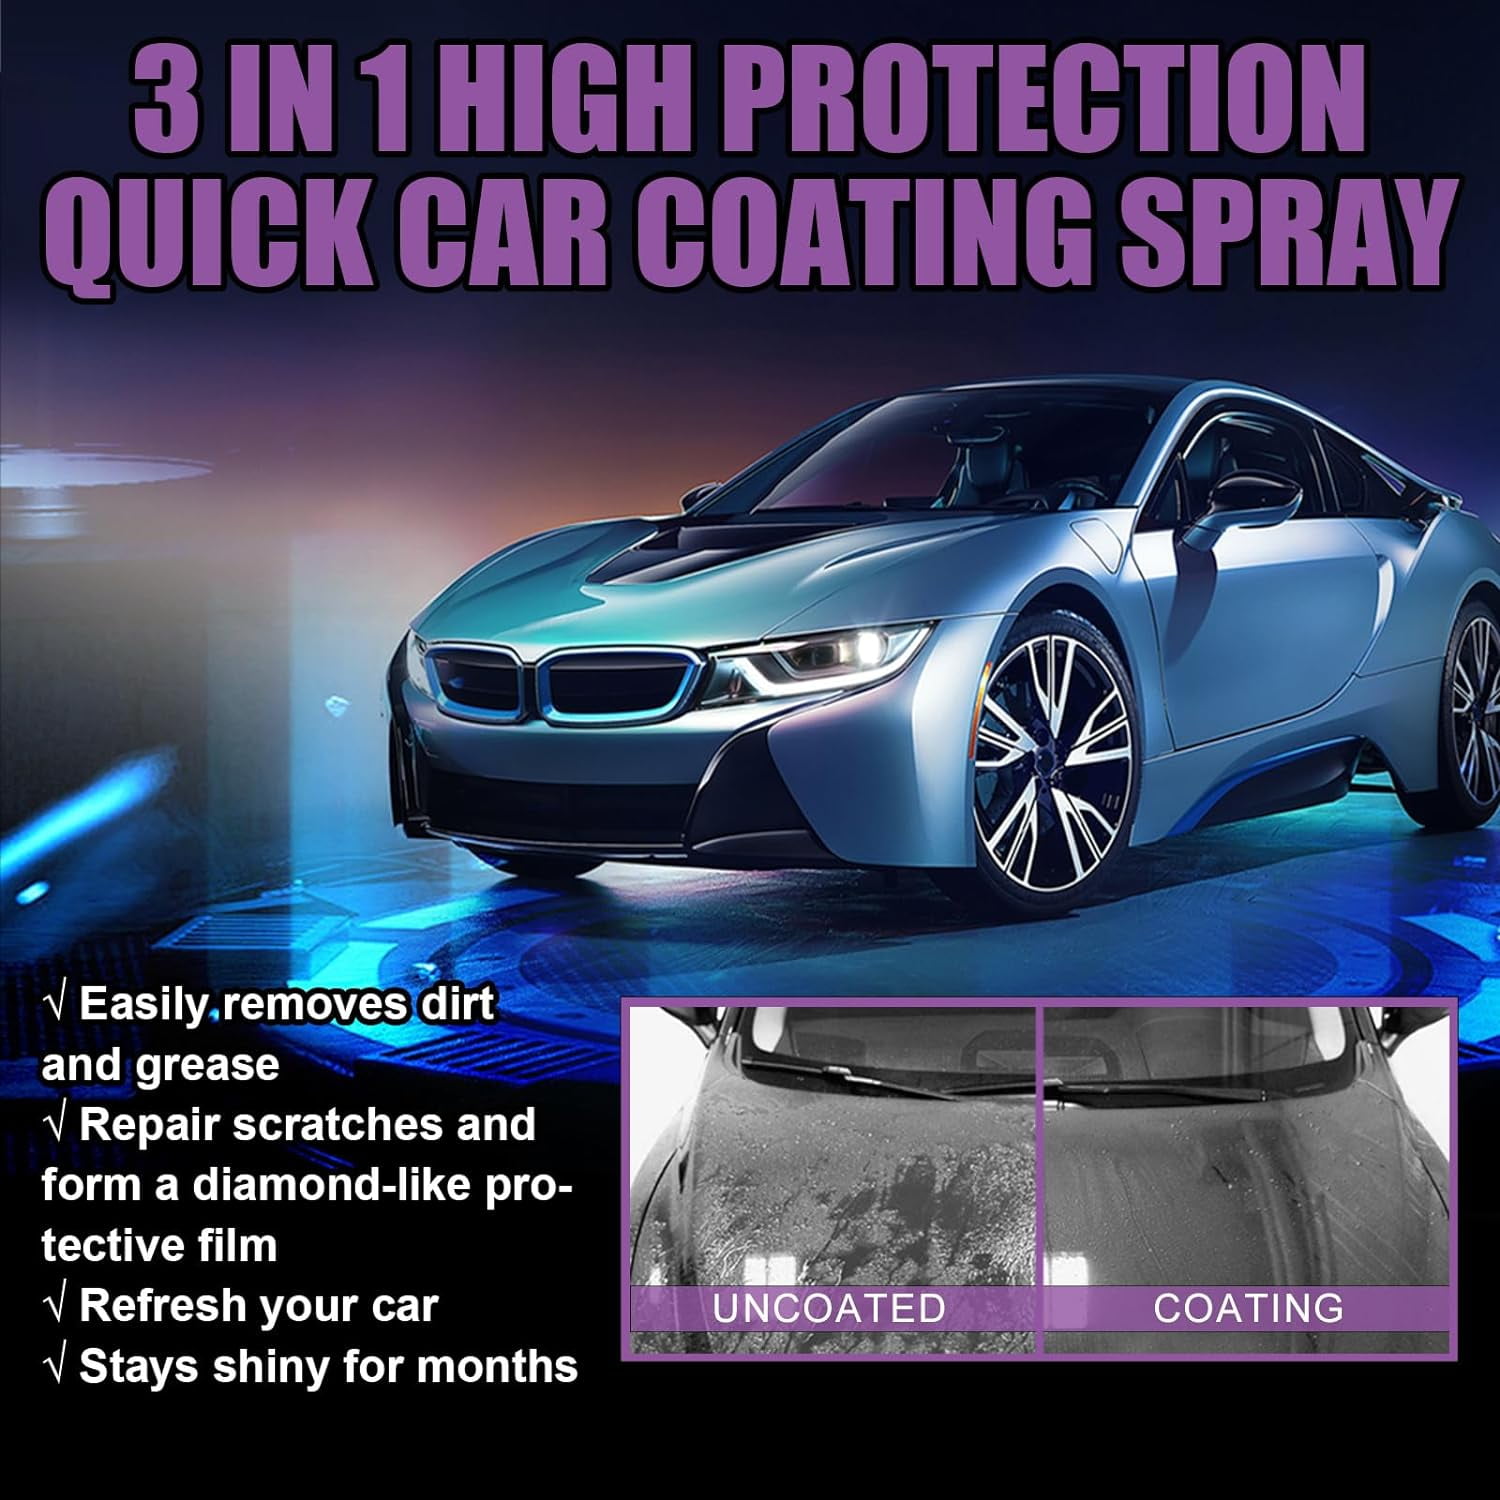 Yotfieot Newbeeoo Car Coating Spray, Newbeeoo 3 in 1 Car Coating Spray, 3  in 1 High Protection Quick Car Coating Spray, High Protection 3 in 1 Spray